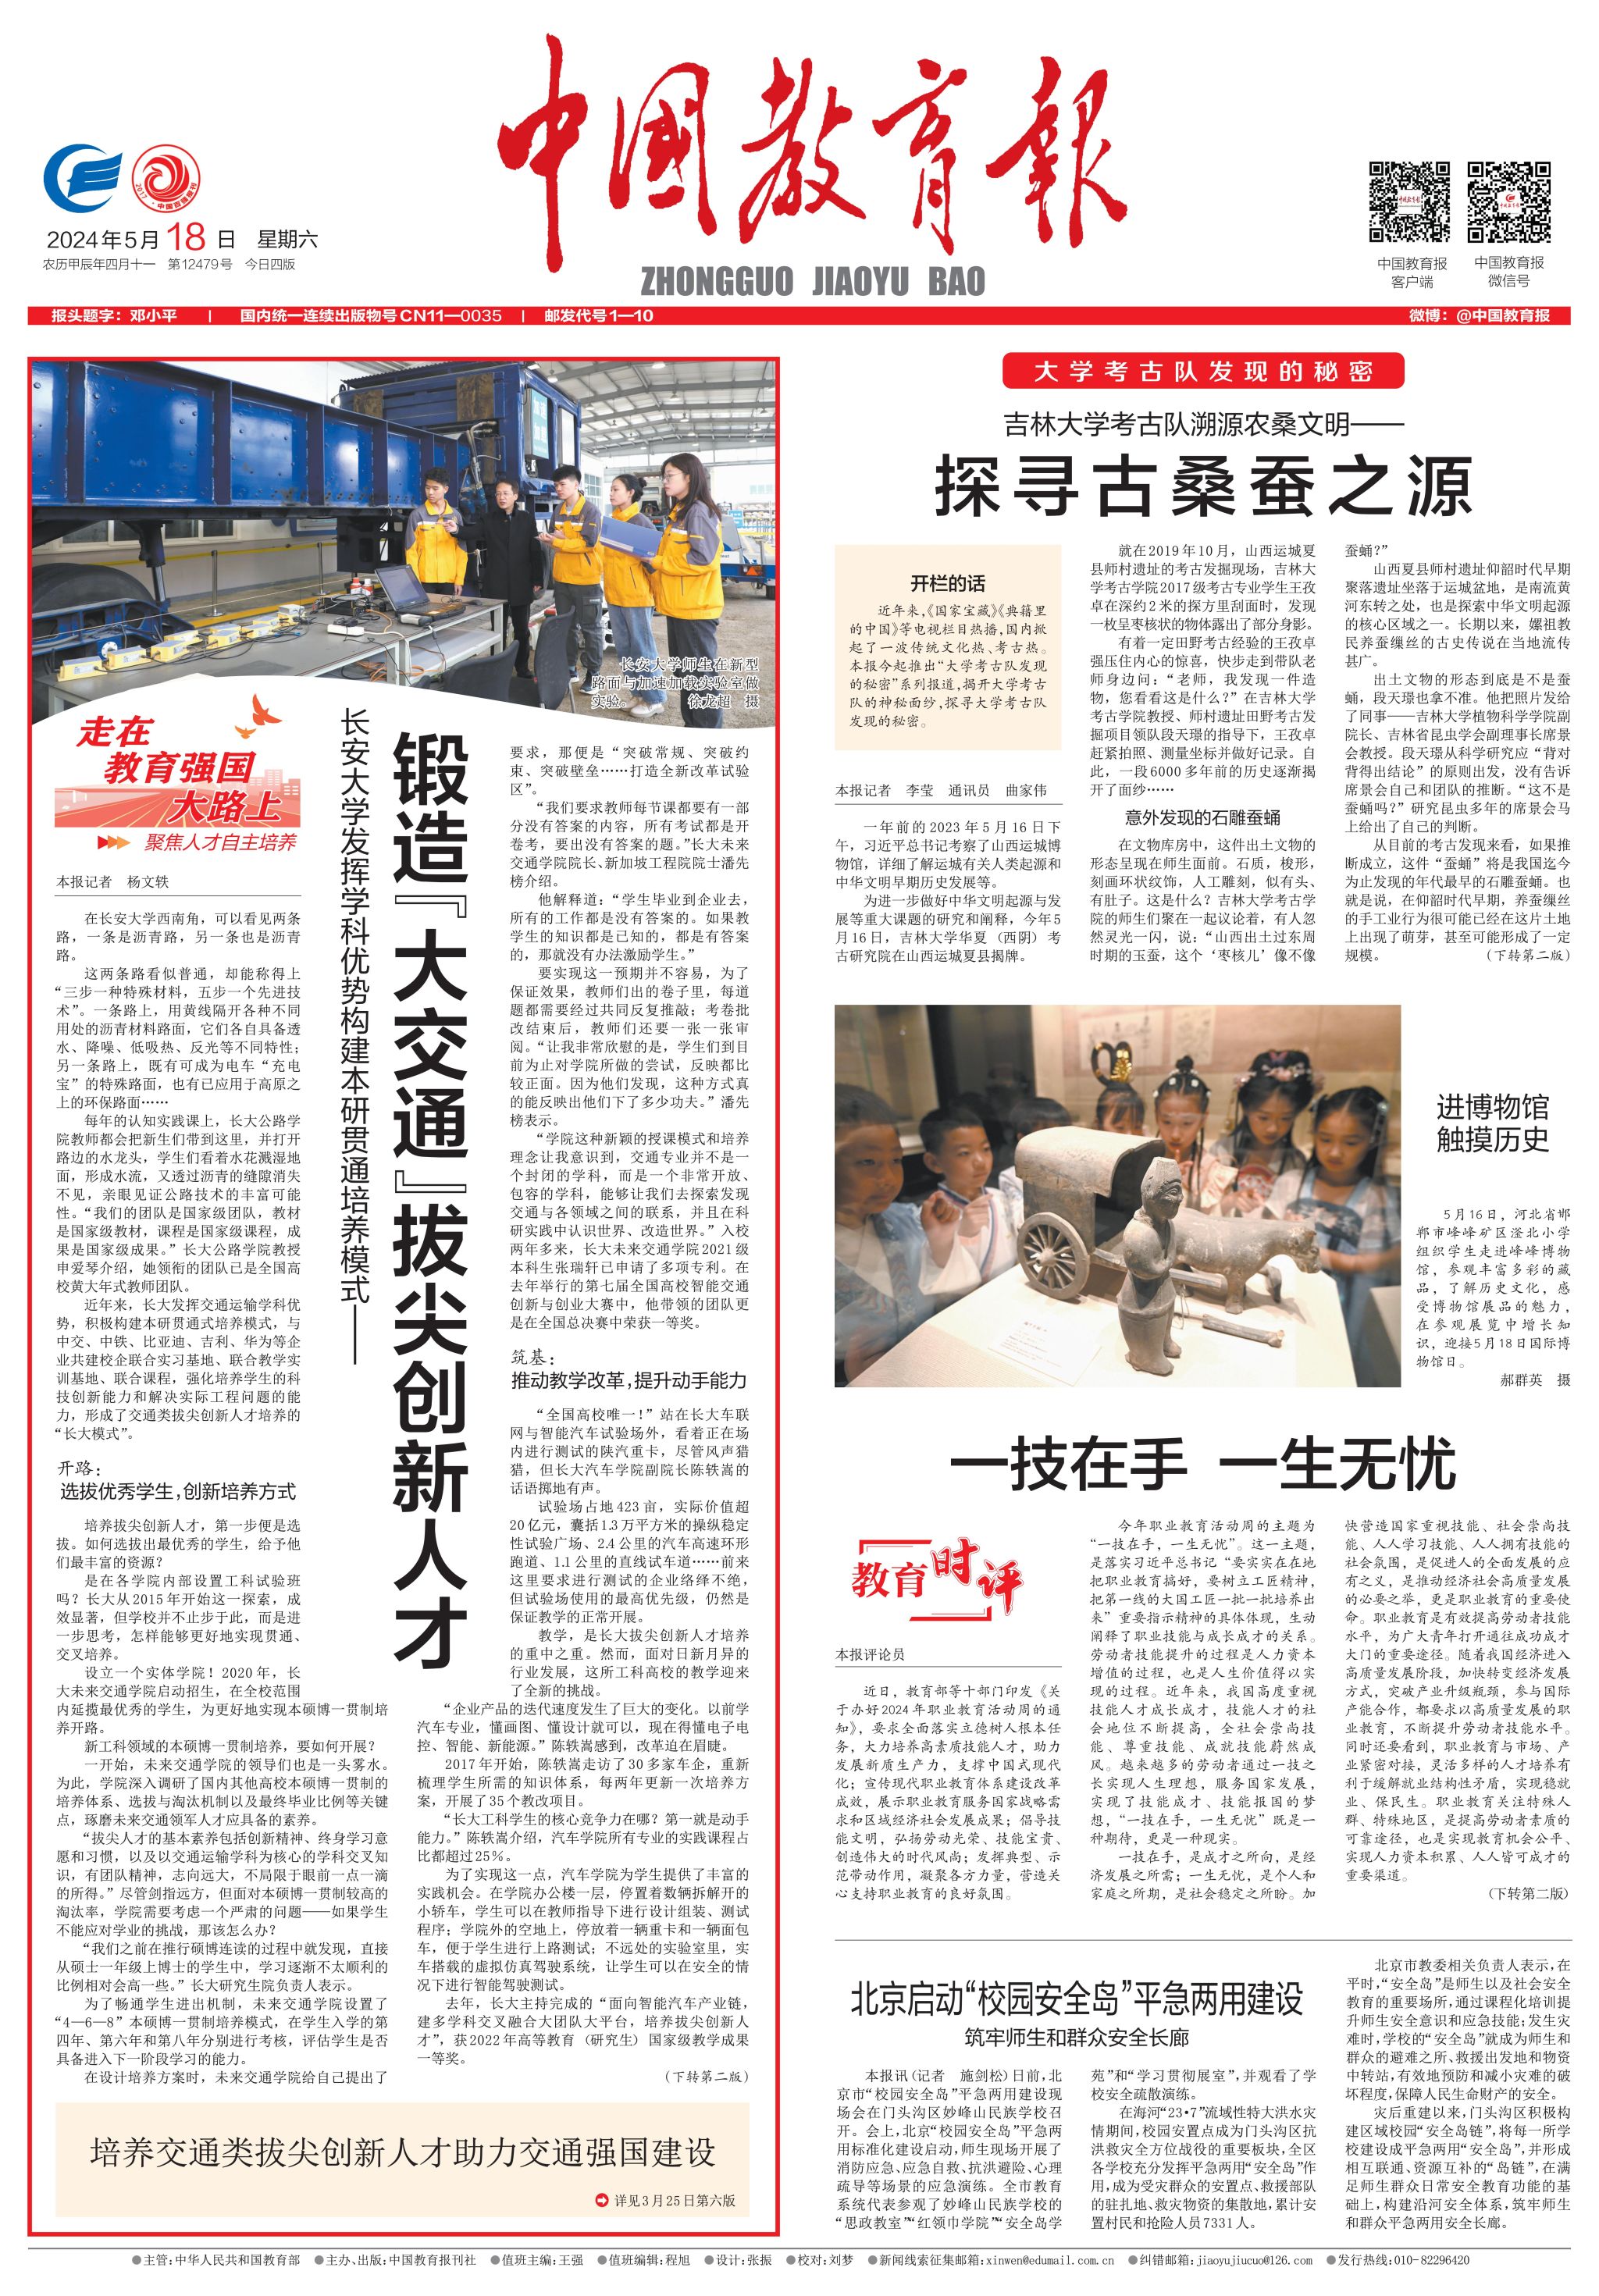 《中国教育报》报道我校大交通拔尖创新人才培养工作